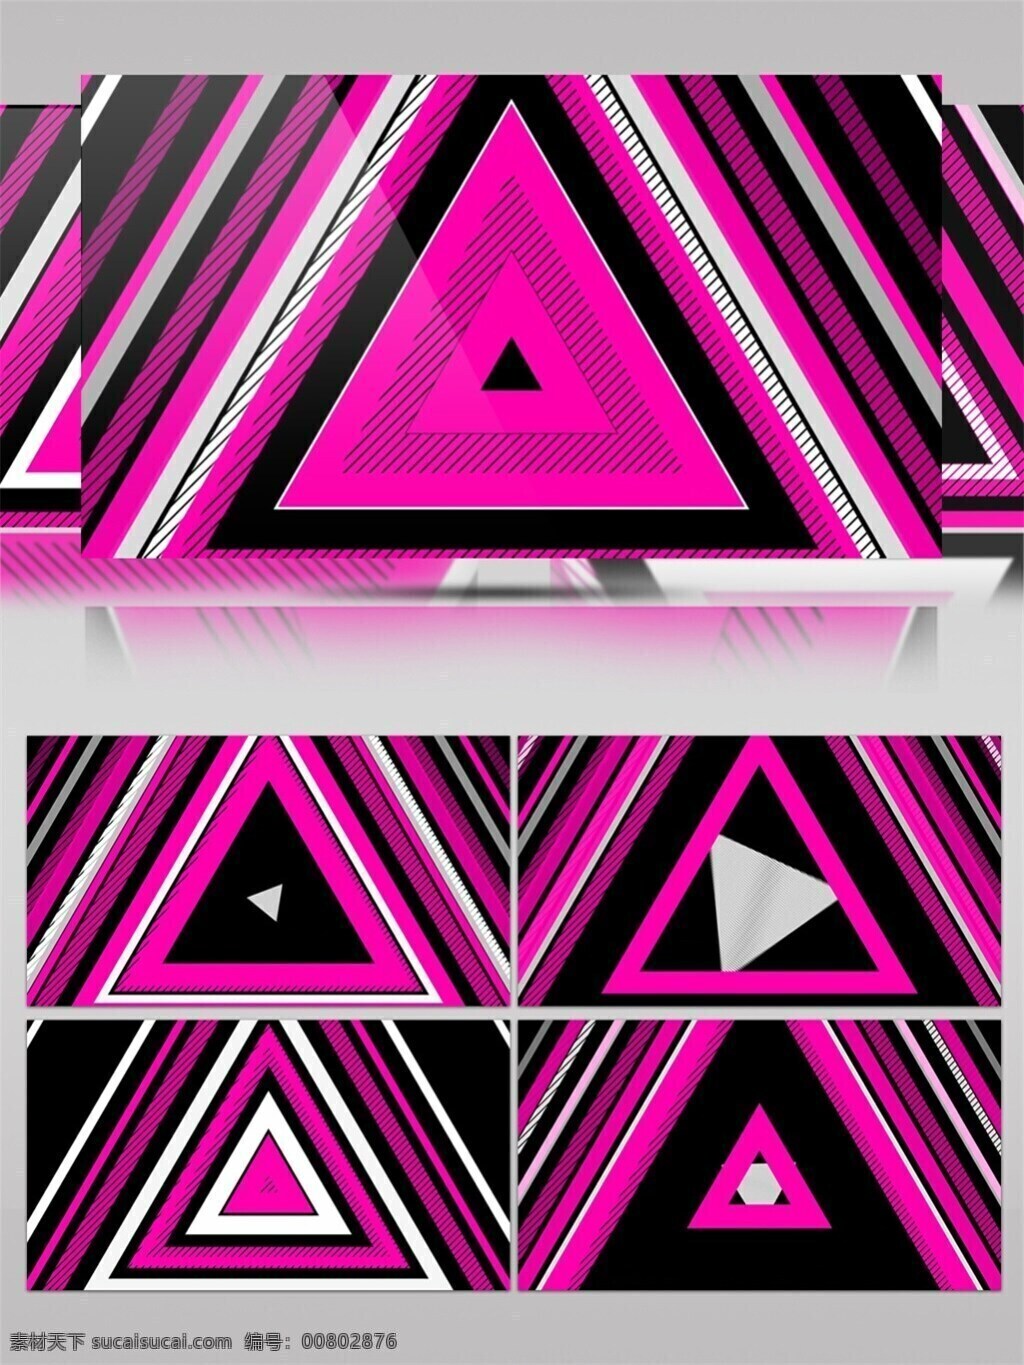 粉 光 三角 高清 视频 壁纸图案 动态展示 房间装饰 背景 立体几何 三角形特效 炫酷粉光 装饰风格